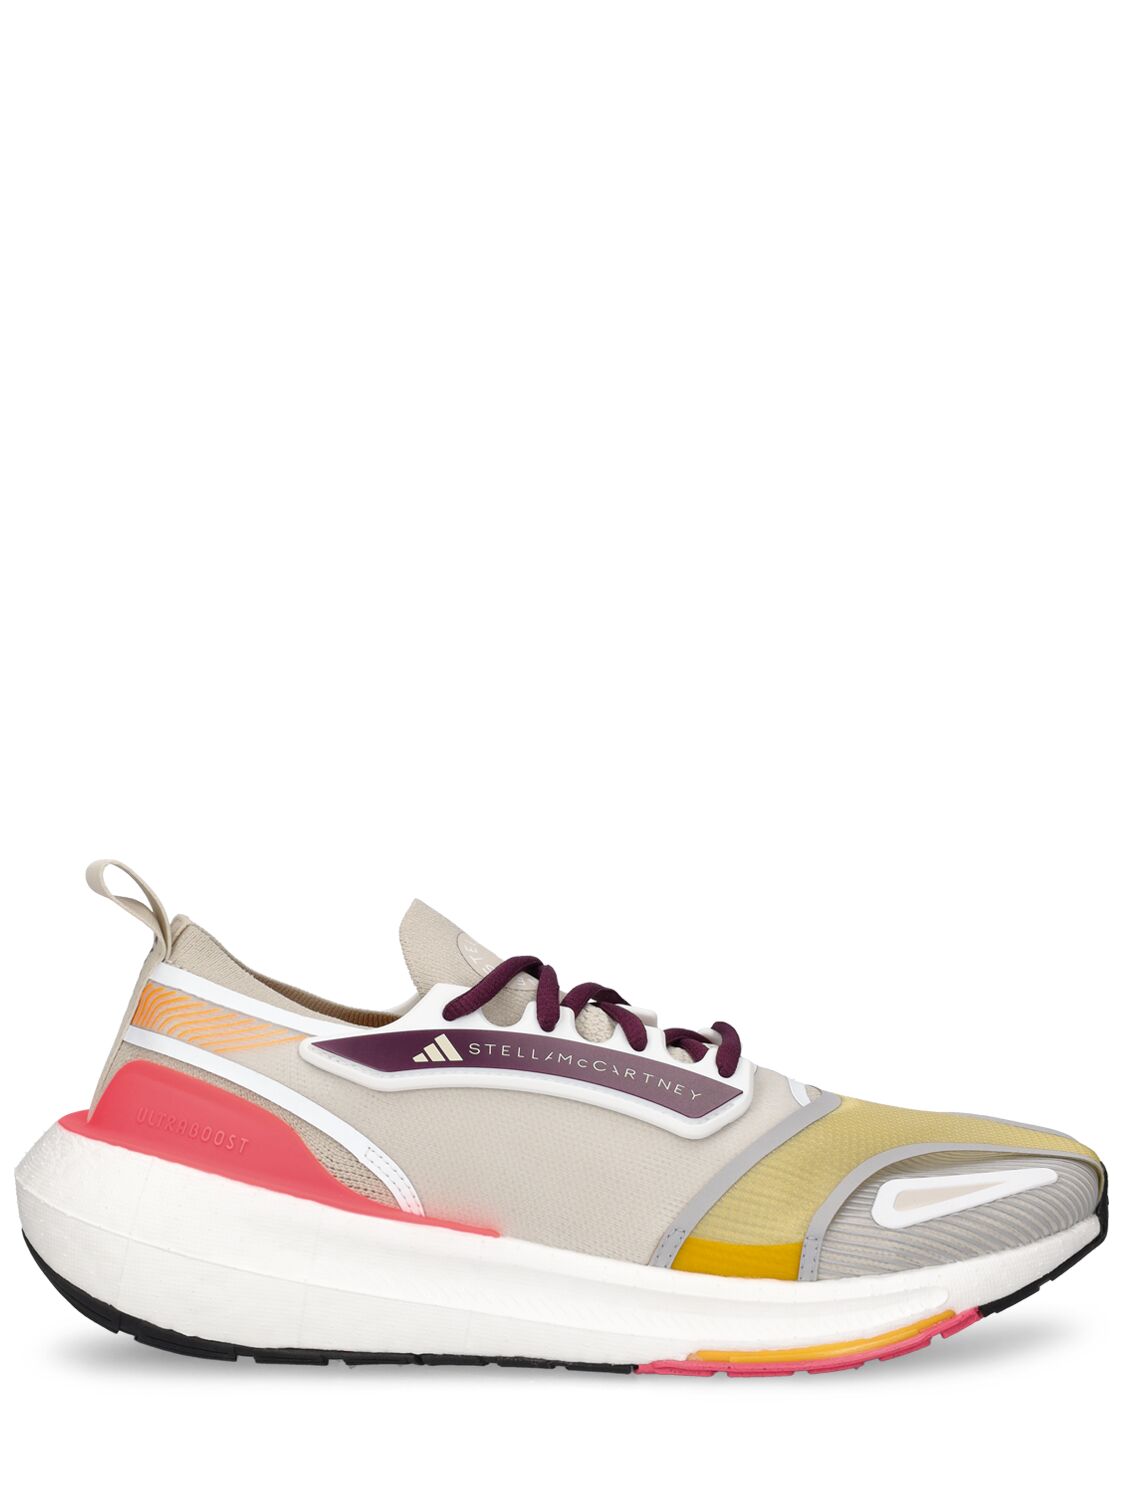 Adidas By Stella Mccartney Ub23 Lower Footprint Sneakers In Multicolor